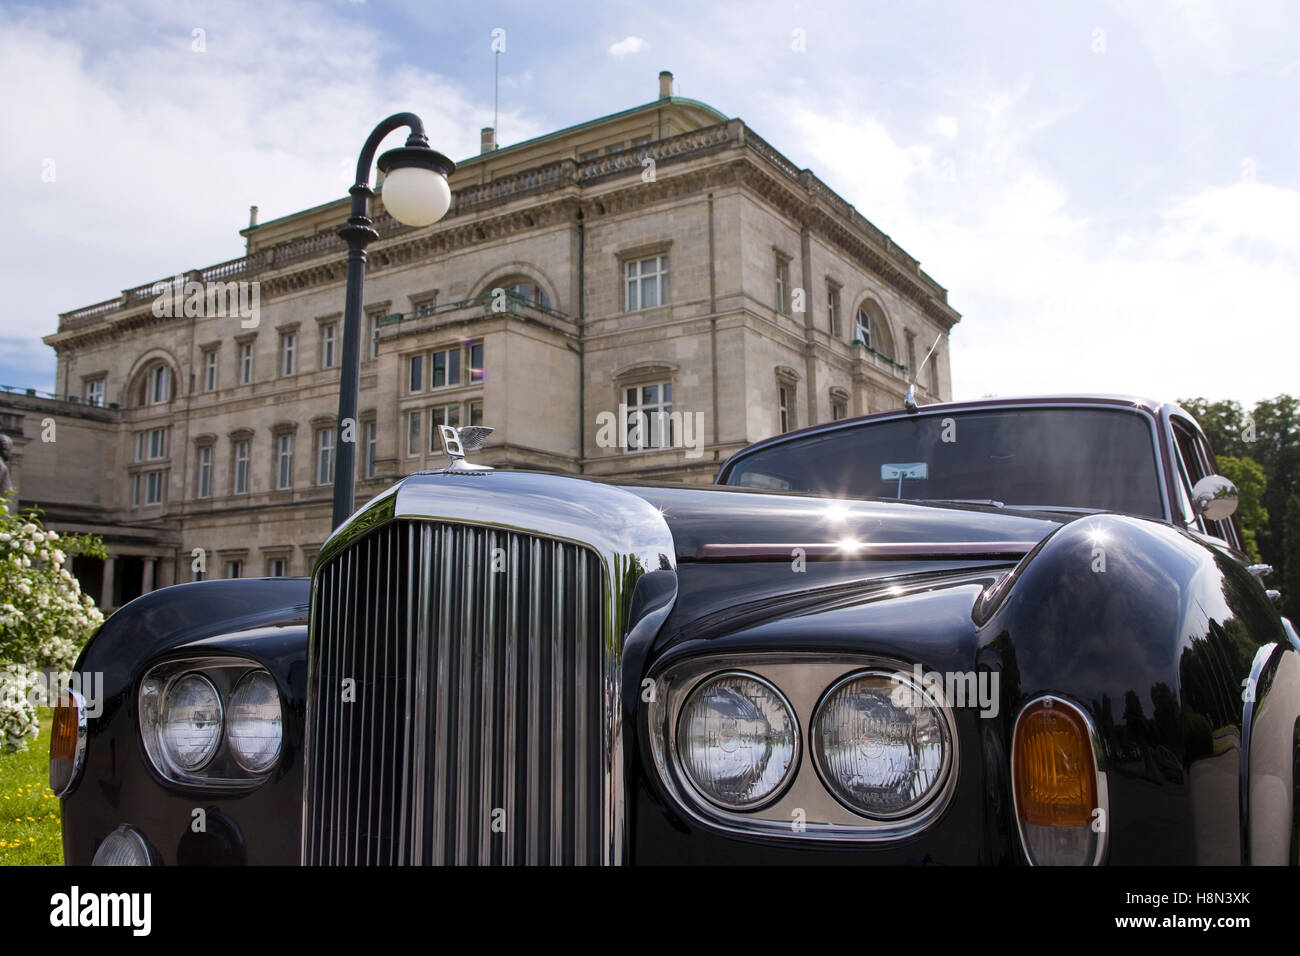 Germania, la zona della Ruhr, Essen, una Bentley oldtimer davanti la villa Huegel, ex residenza della famiglia industrialista Krupp. Foto Stock